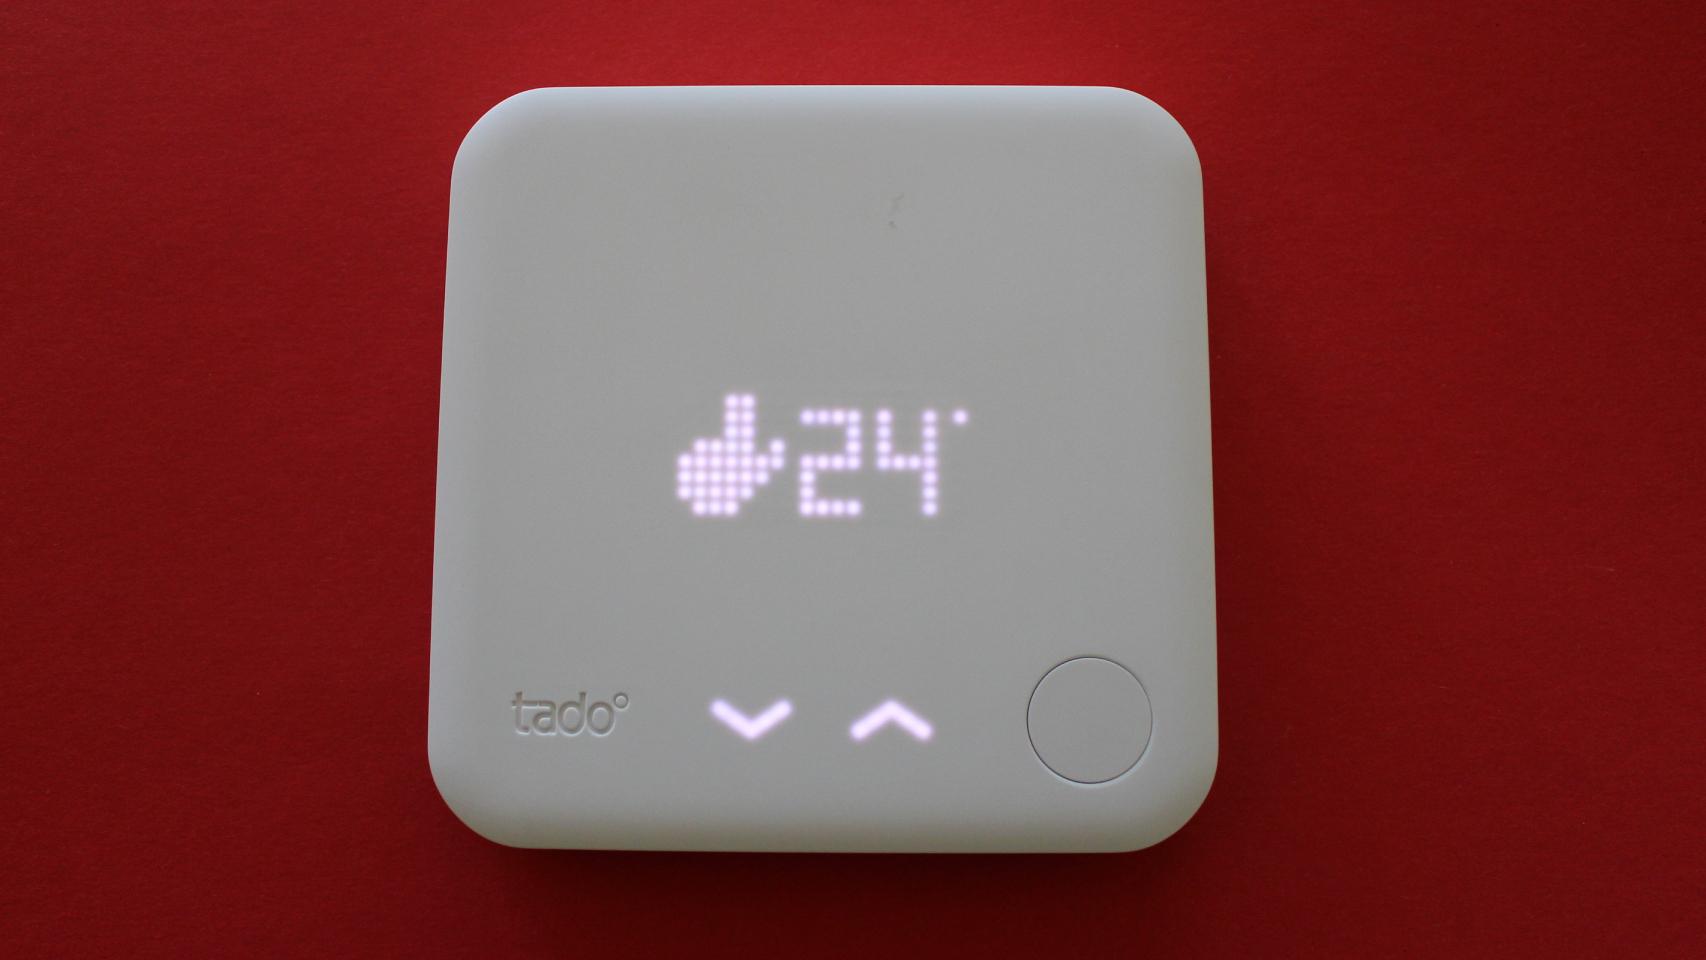 Qué termostato inteligente comprar, ¿cuál es mejor?